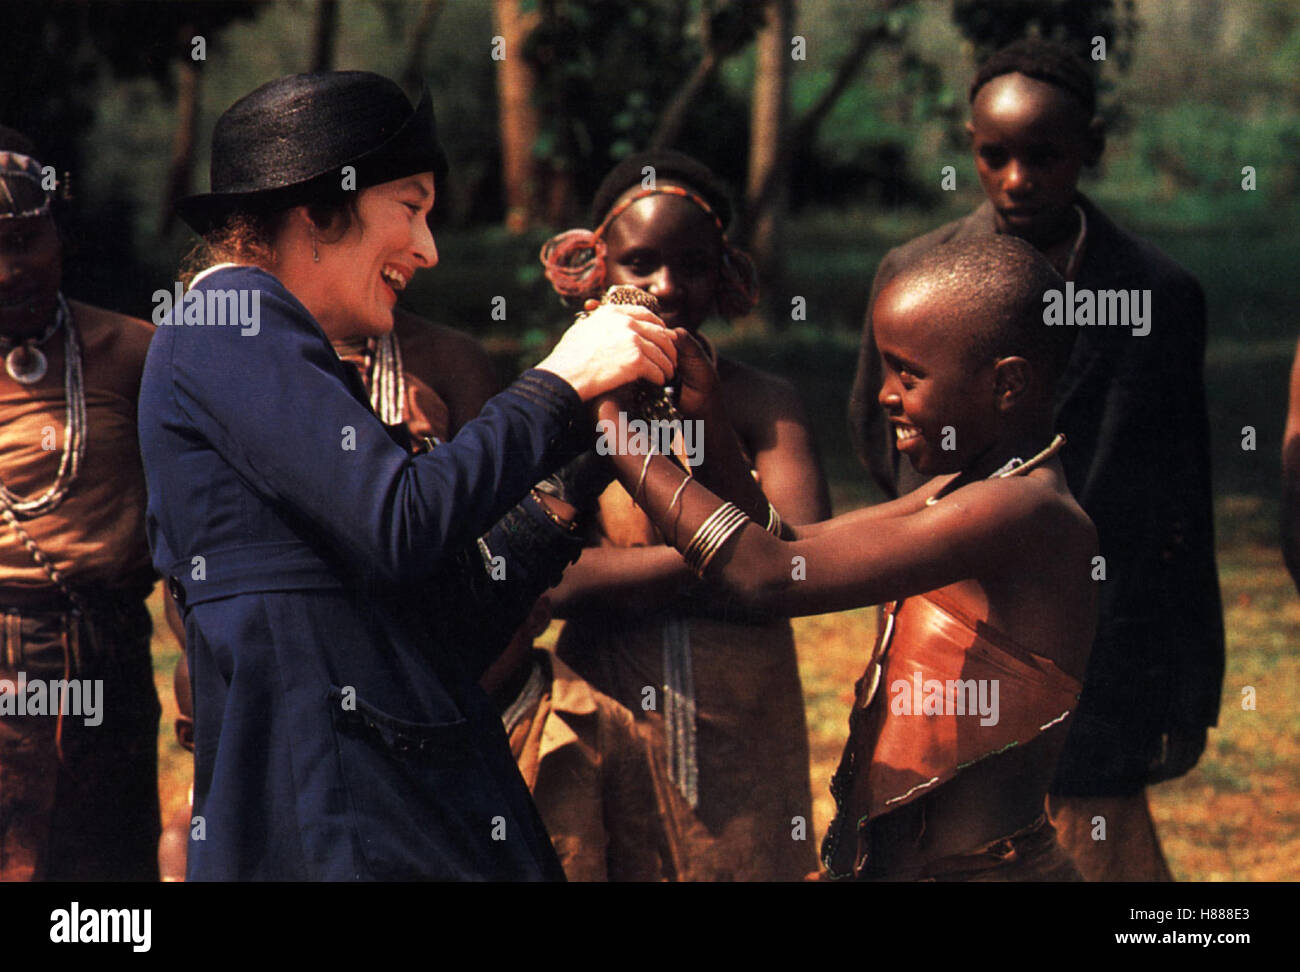 Jenseits von Afrika, (OUT OF AFRICA) USA 1985, Regie: Sidney Pollack, MERYL STREEP, Stichwort: Kinder, Lachen, Neger, Farbige, Geschenk Stock Photo